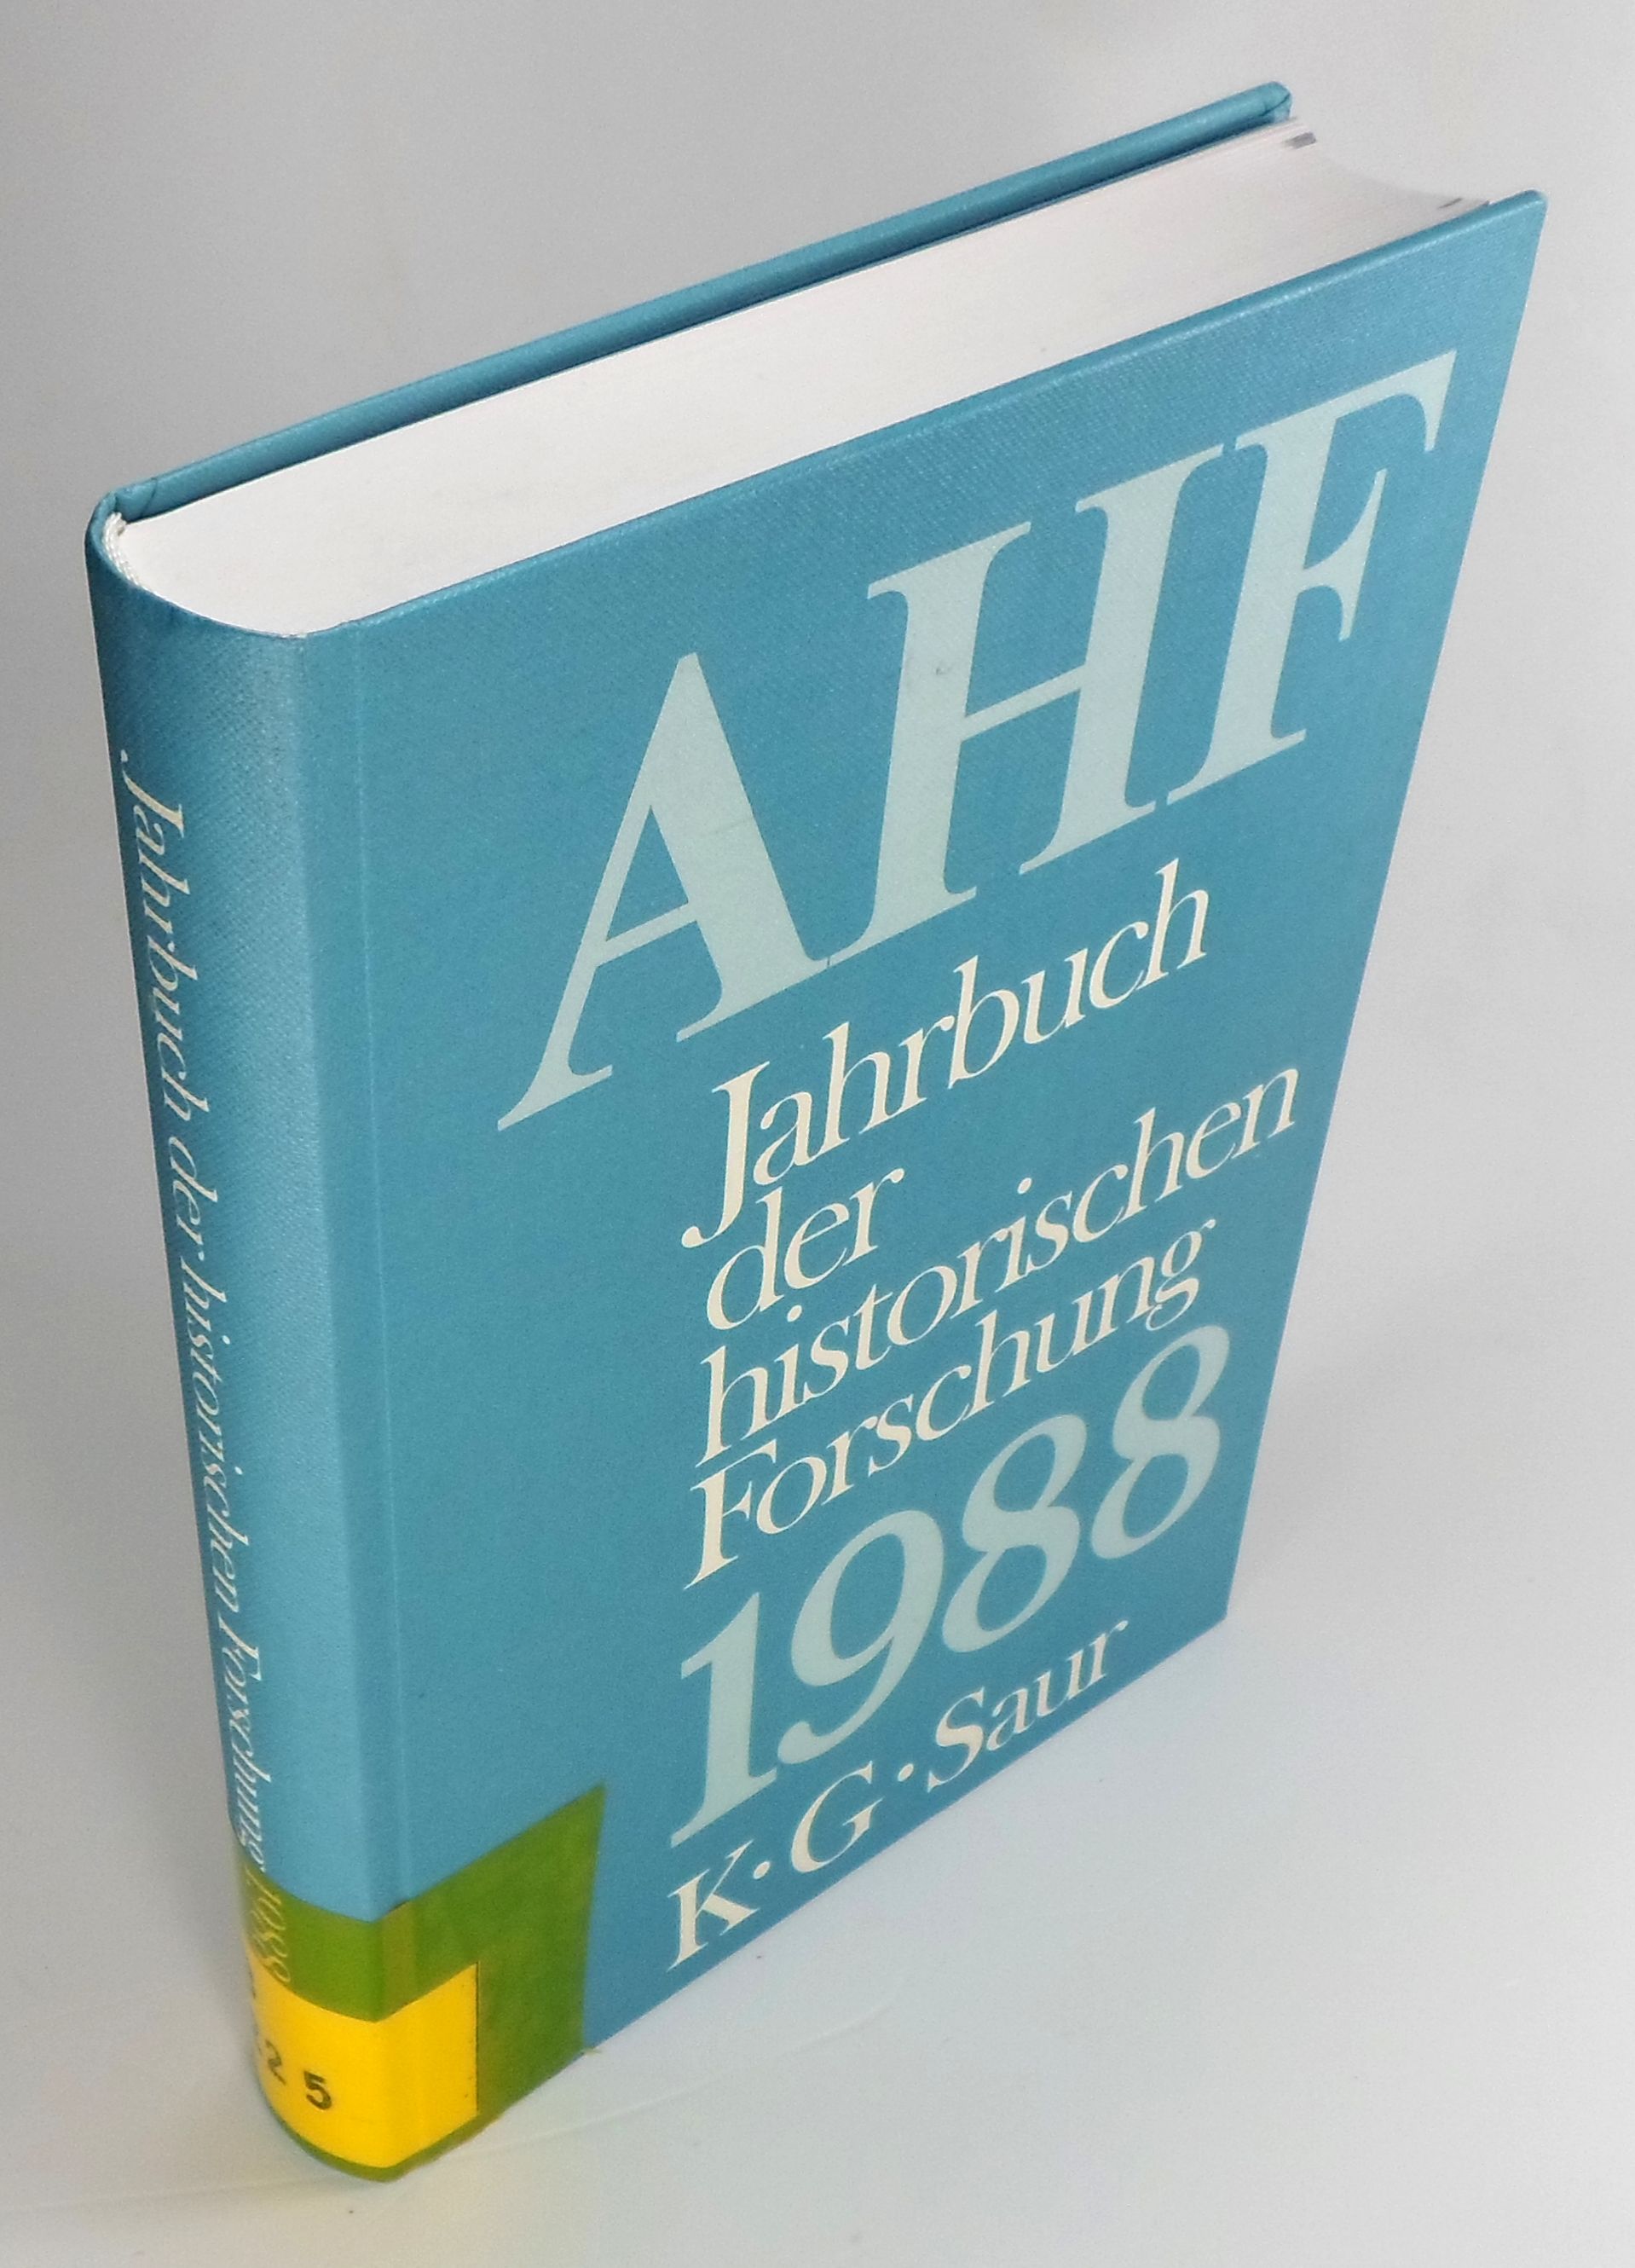 Jahrbuch der historischen Forschung in der Bundesrepublik Deutschland. Berichtsjahr 1988. - Arbeitsgemeinschaft außeruniversitärer historischer Forschungseinrichtungen in der BRD (Hg.)